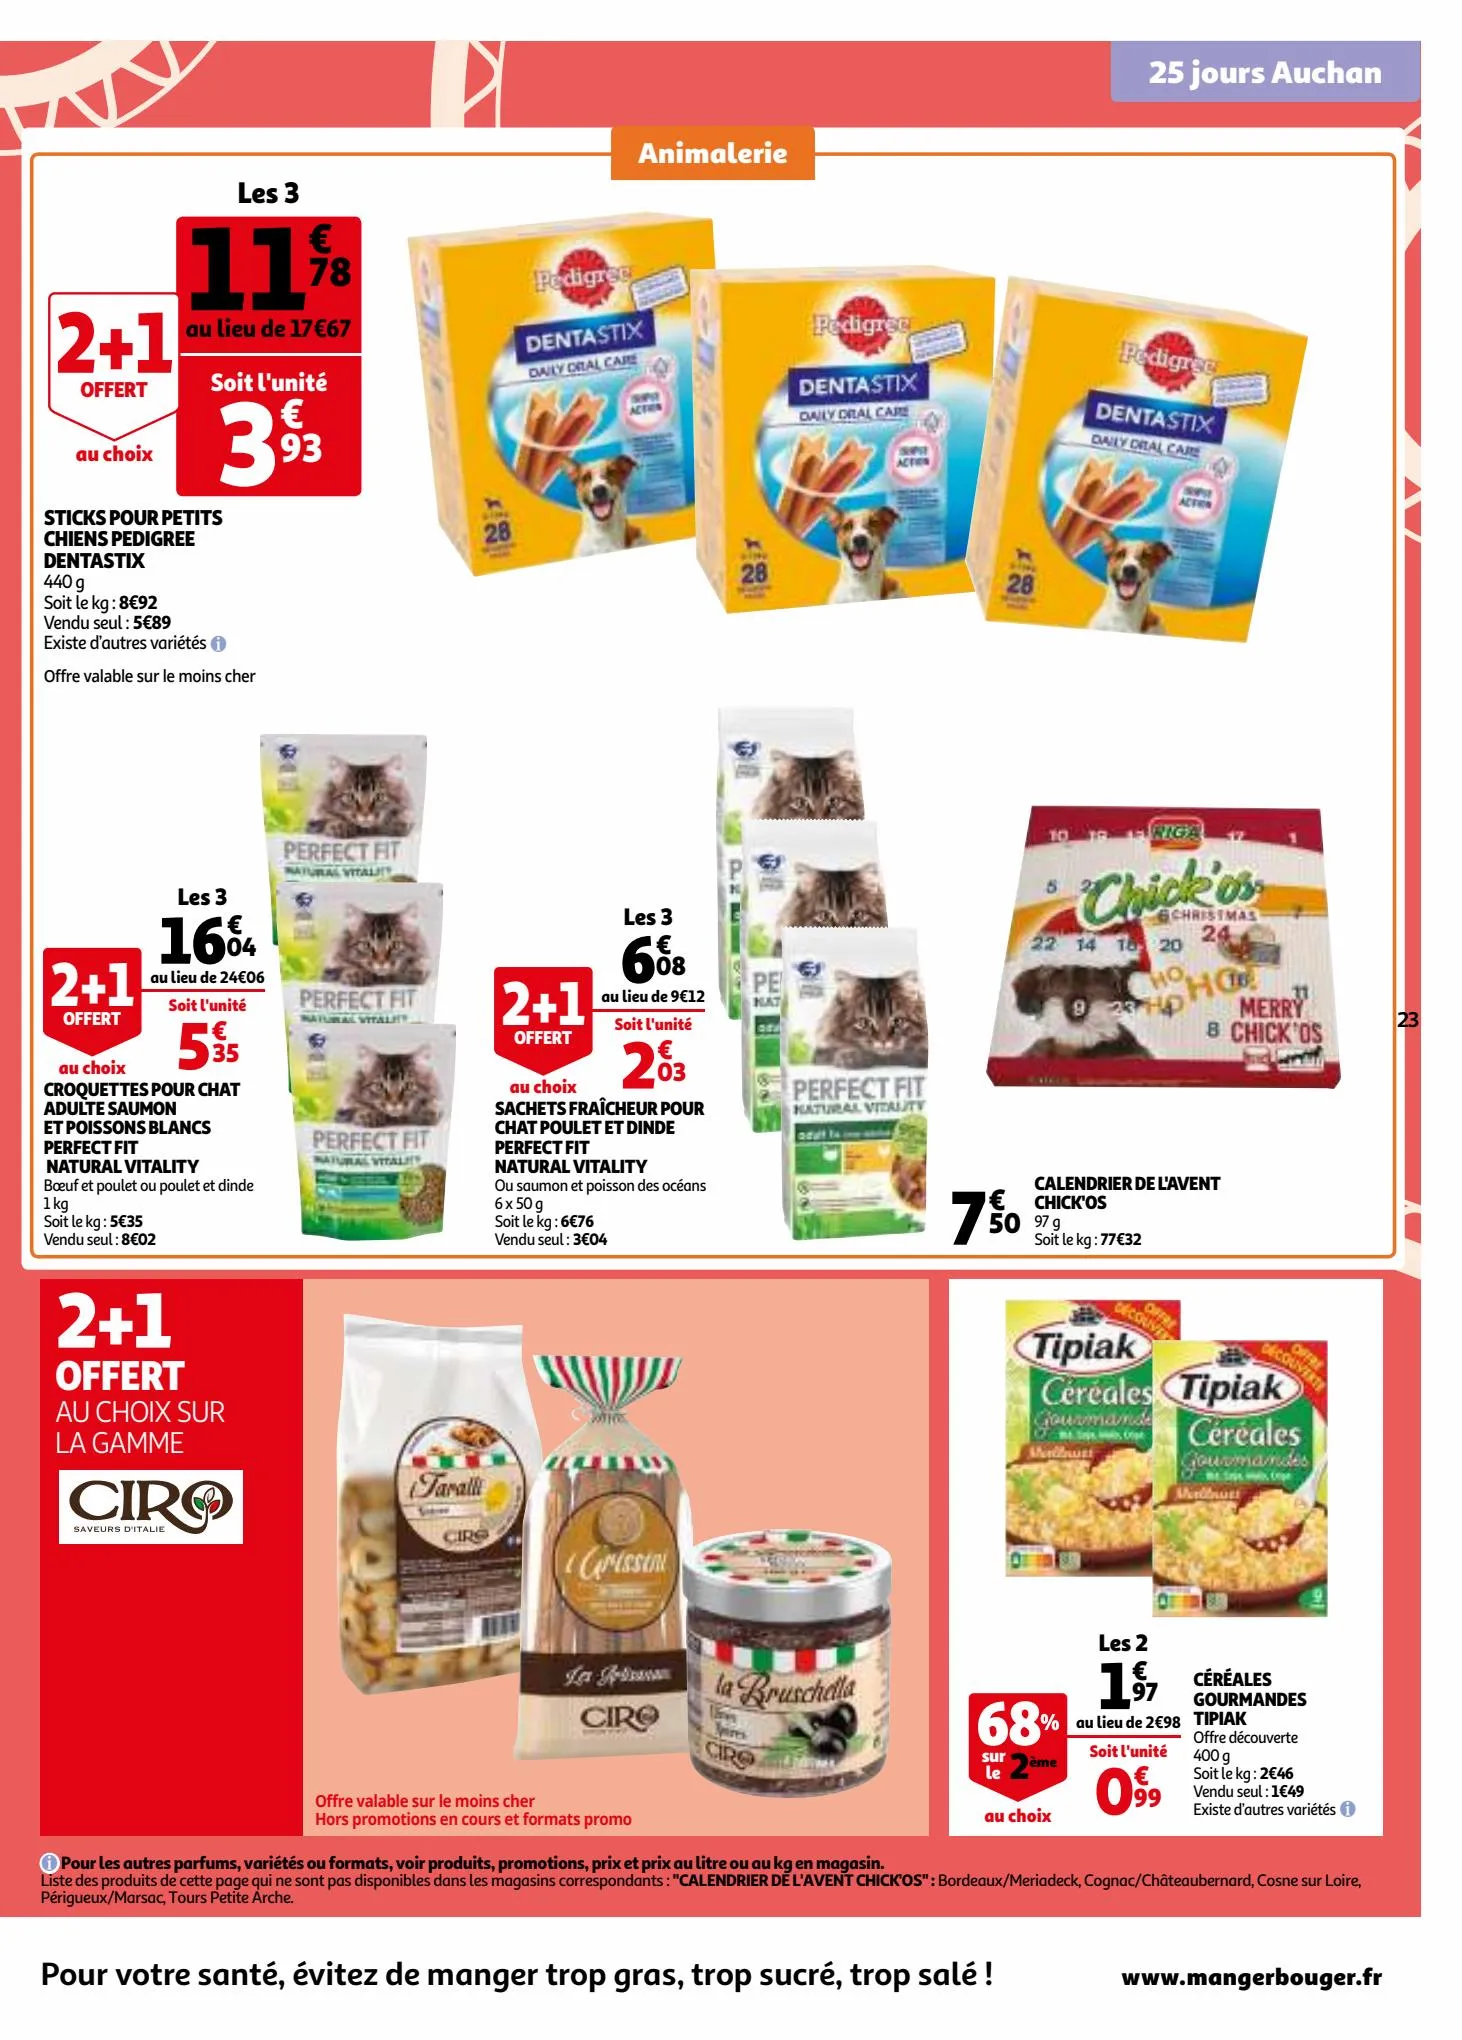 Catalogue 25 jours Auchan, page 00023